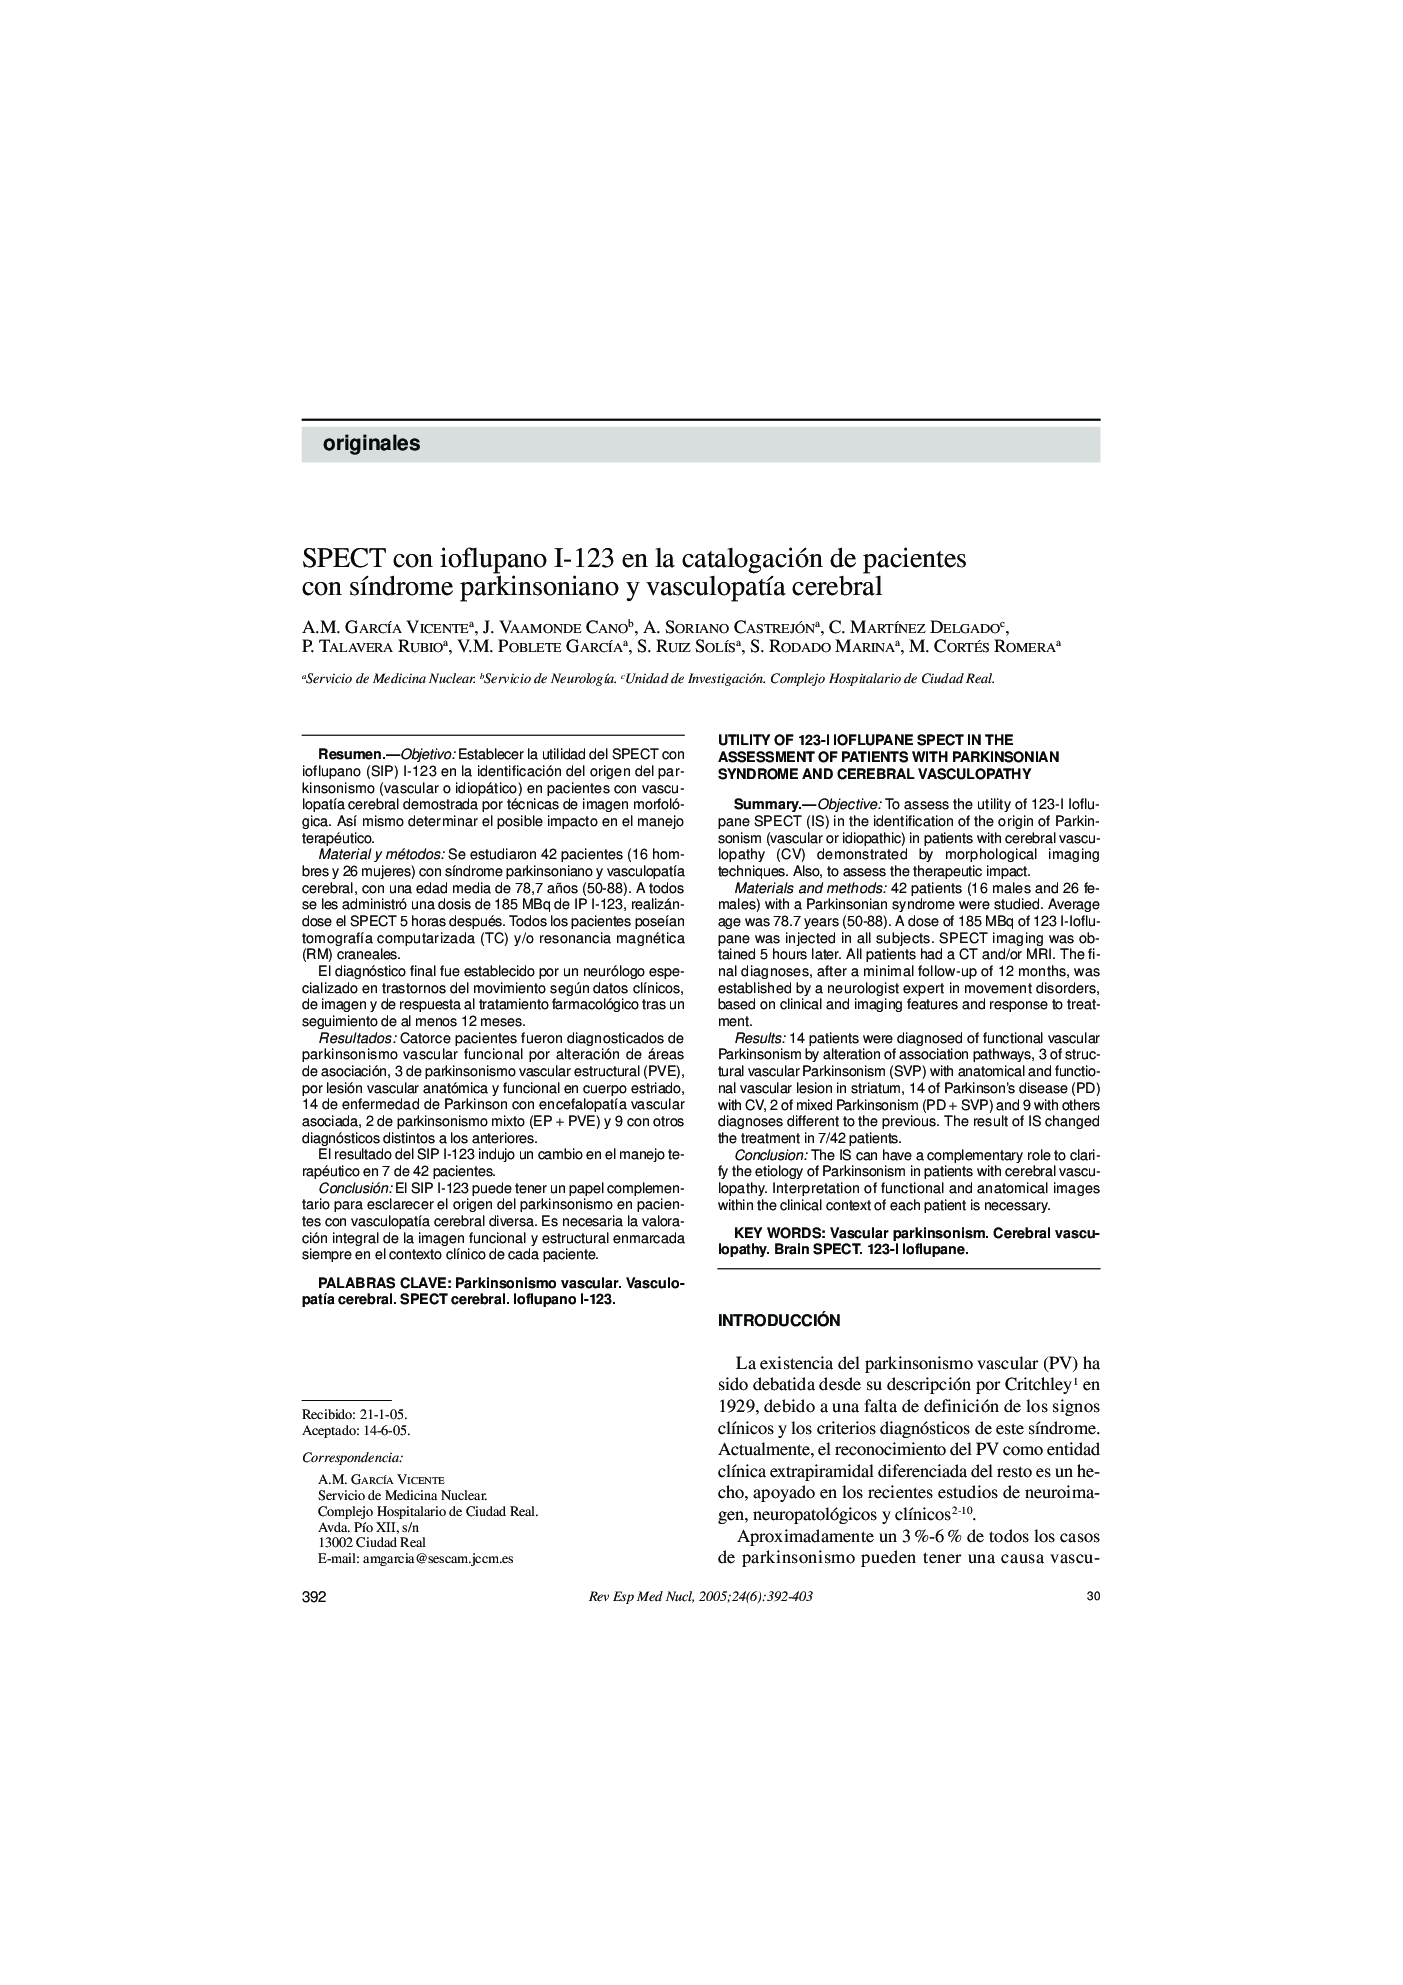 SPECT con ioflupano I-123 en la catalogación de pacientes con sÃ­ndrome parkinsoniano y vasculopatÃ­a cerebral